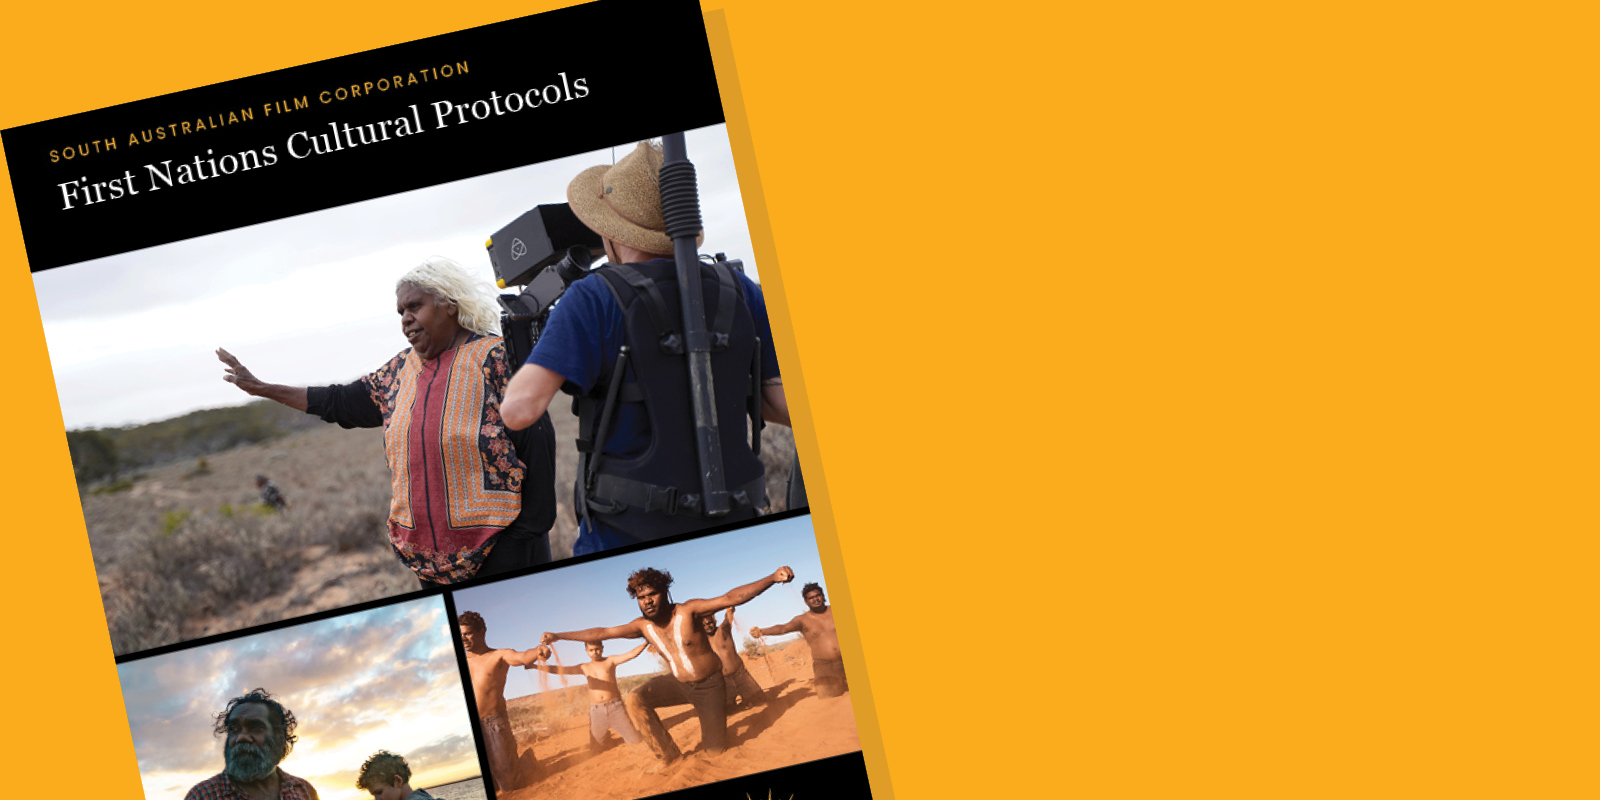 The SAFC Cultural Protocols guide